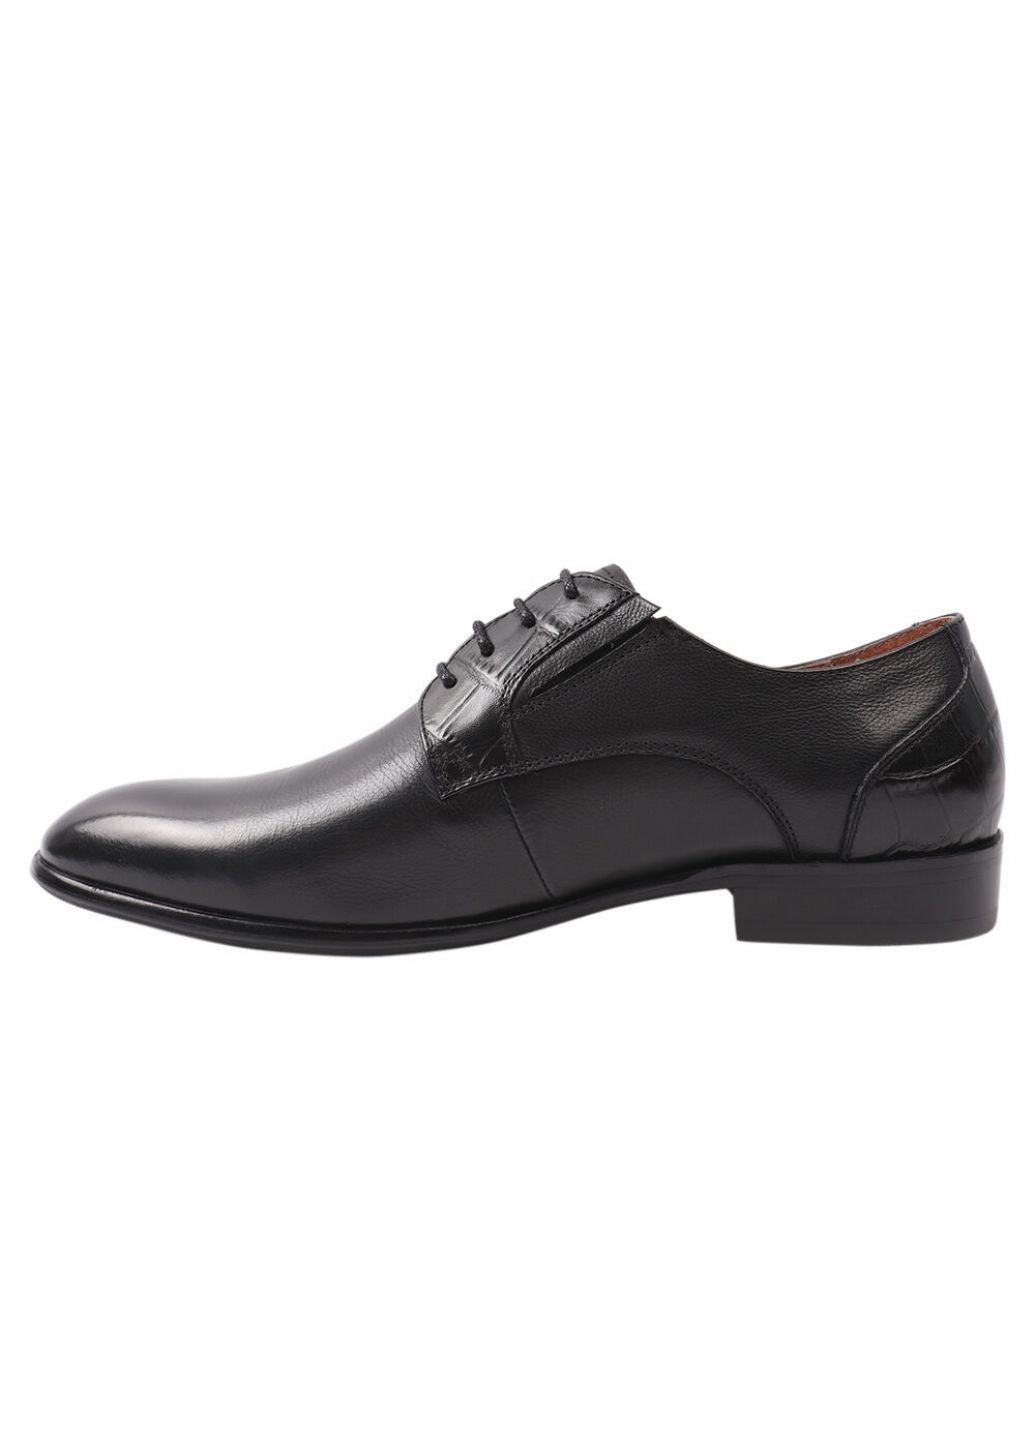 Черные туфли мужские из натуральной кожи, на низком ходу, на шнуровке, черные, Anemone